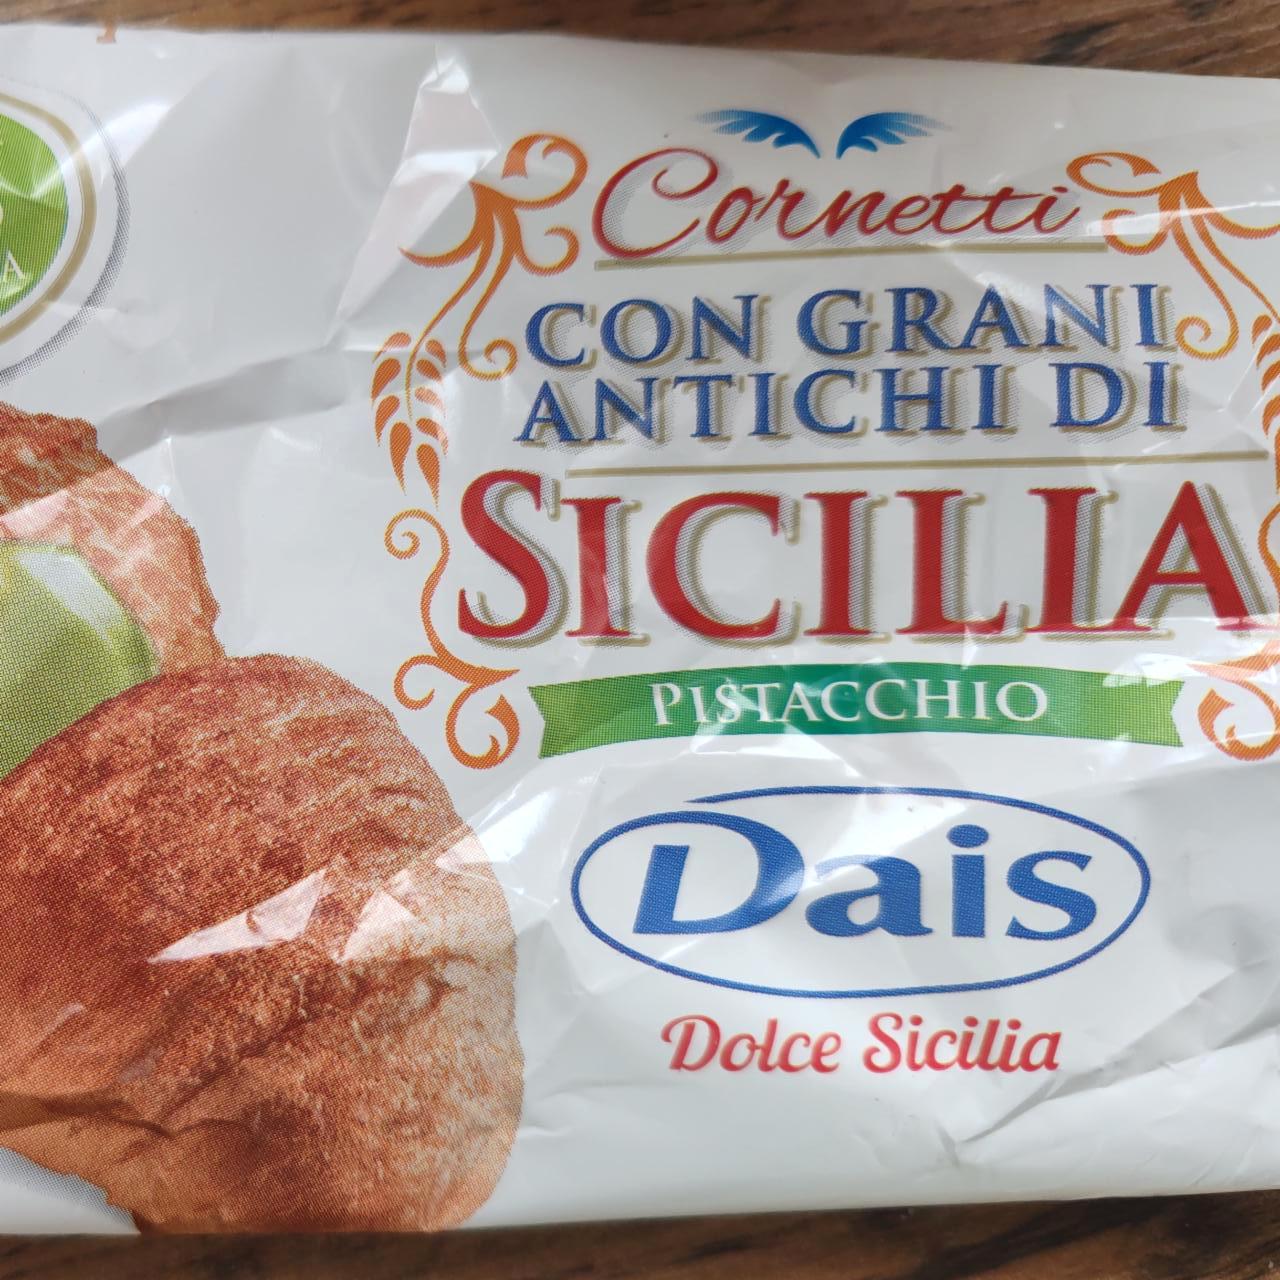 Képek - Cornetti con grani antichi di Sicilia Pistacchio Dais